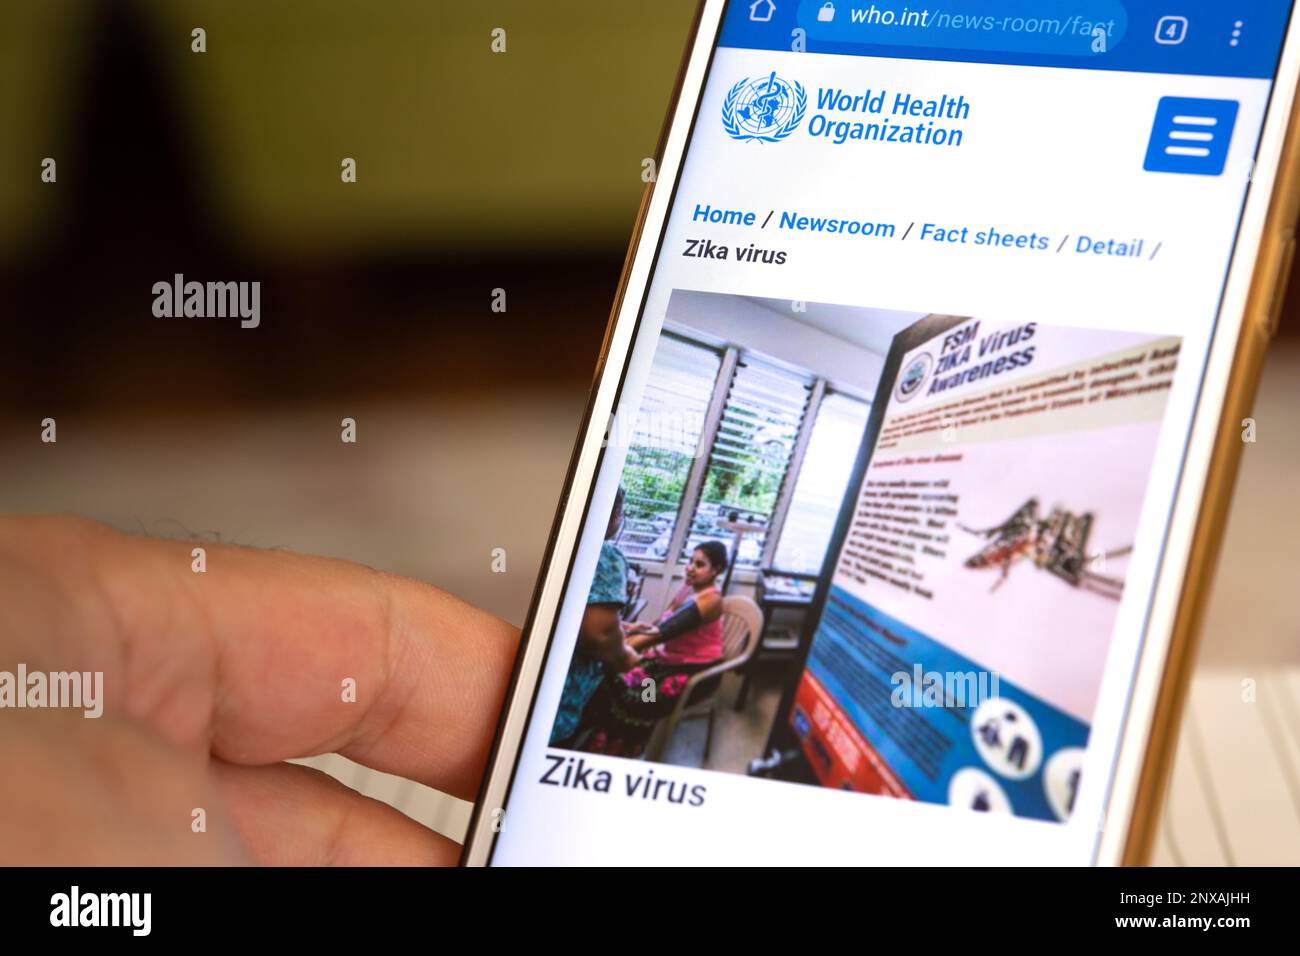 Eine Hand hält ein Mobiltelefon. Die Website der Weltgesundheitsorganisation ist auf dem Mobiltelefon zugänglich. Bild des Zika-Virus auf der WEBSITE DER WHO. Stockfoto